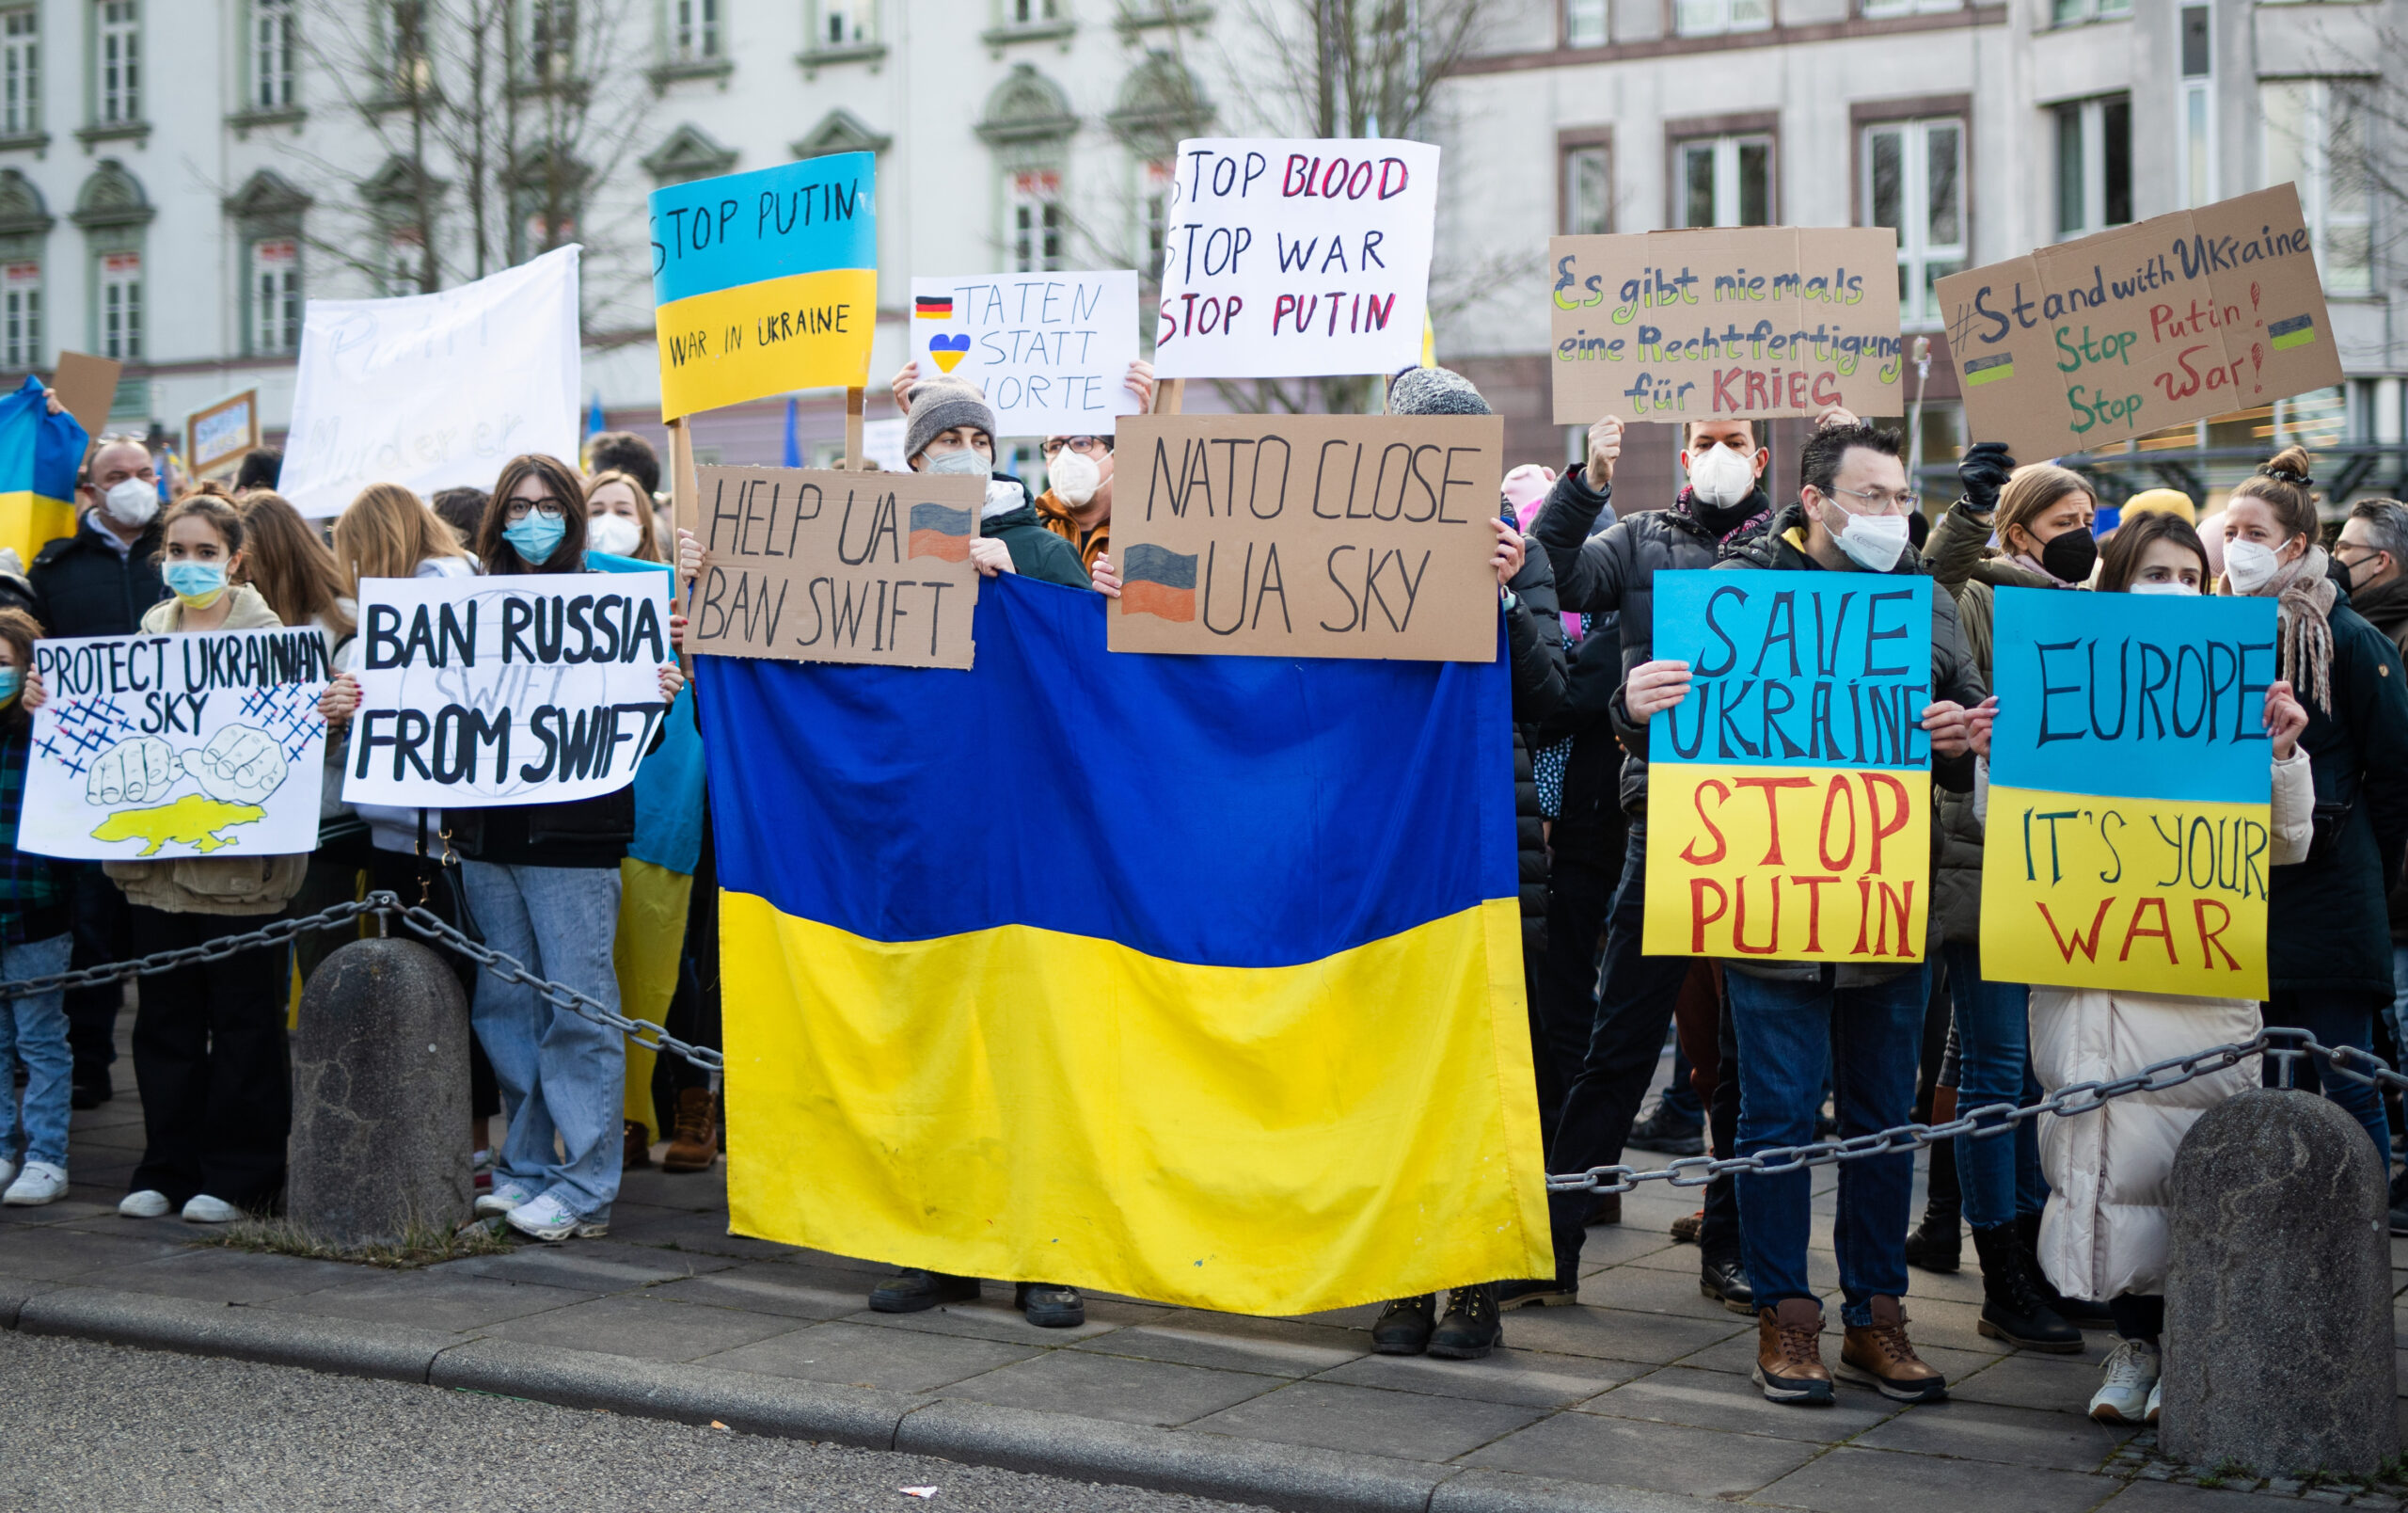 Zahlreiche Menschen demonstrieren in Stuttgart gegen den Militärischen Einsatz Russlands in der Ukraine und halten Schilder und Banner mit den Farben der ukrainischen Flagge.